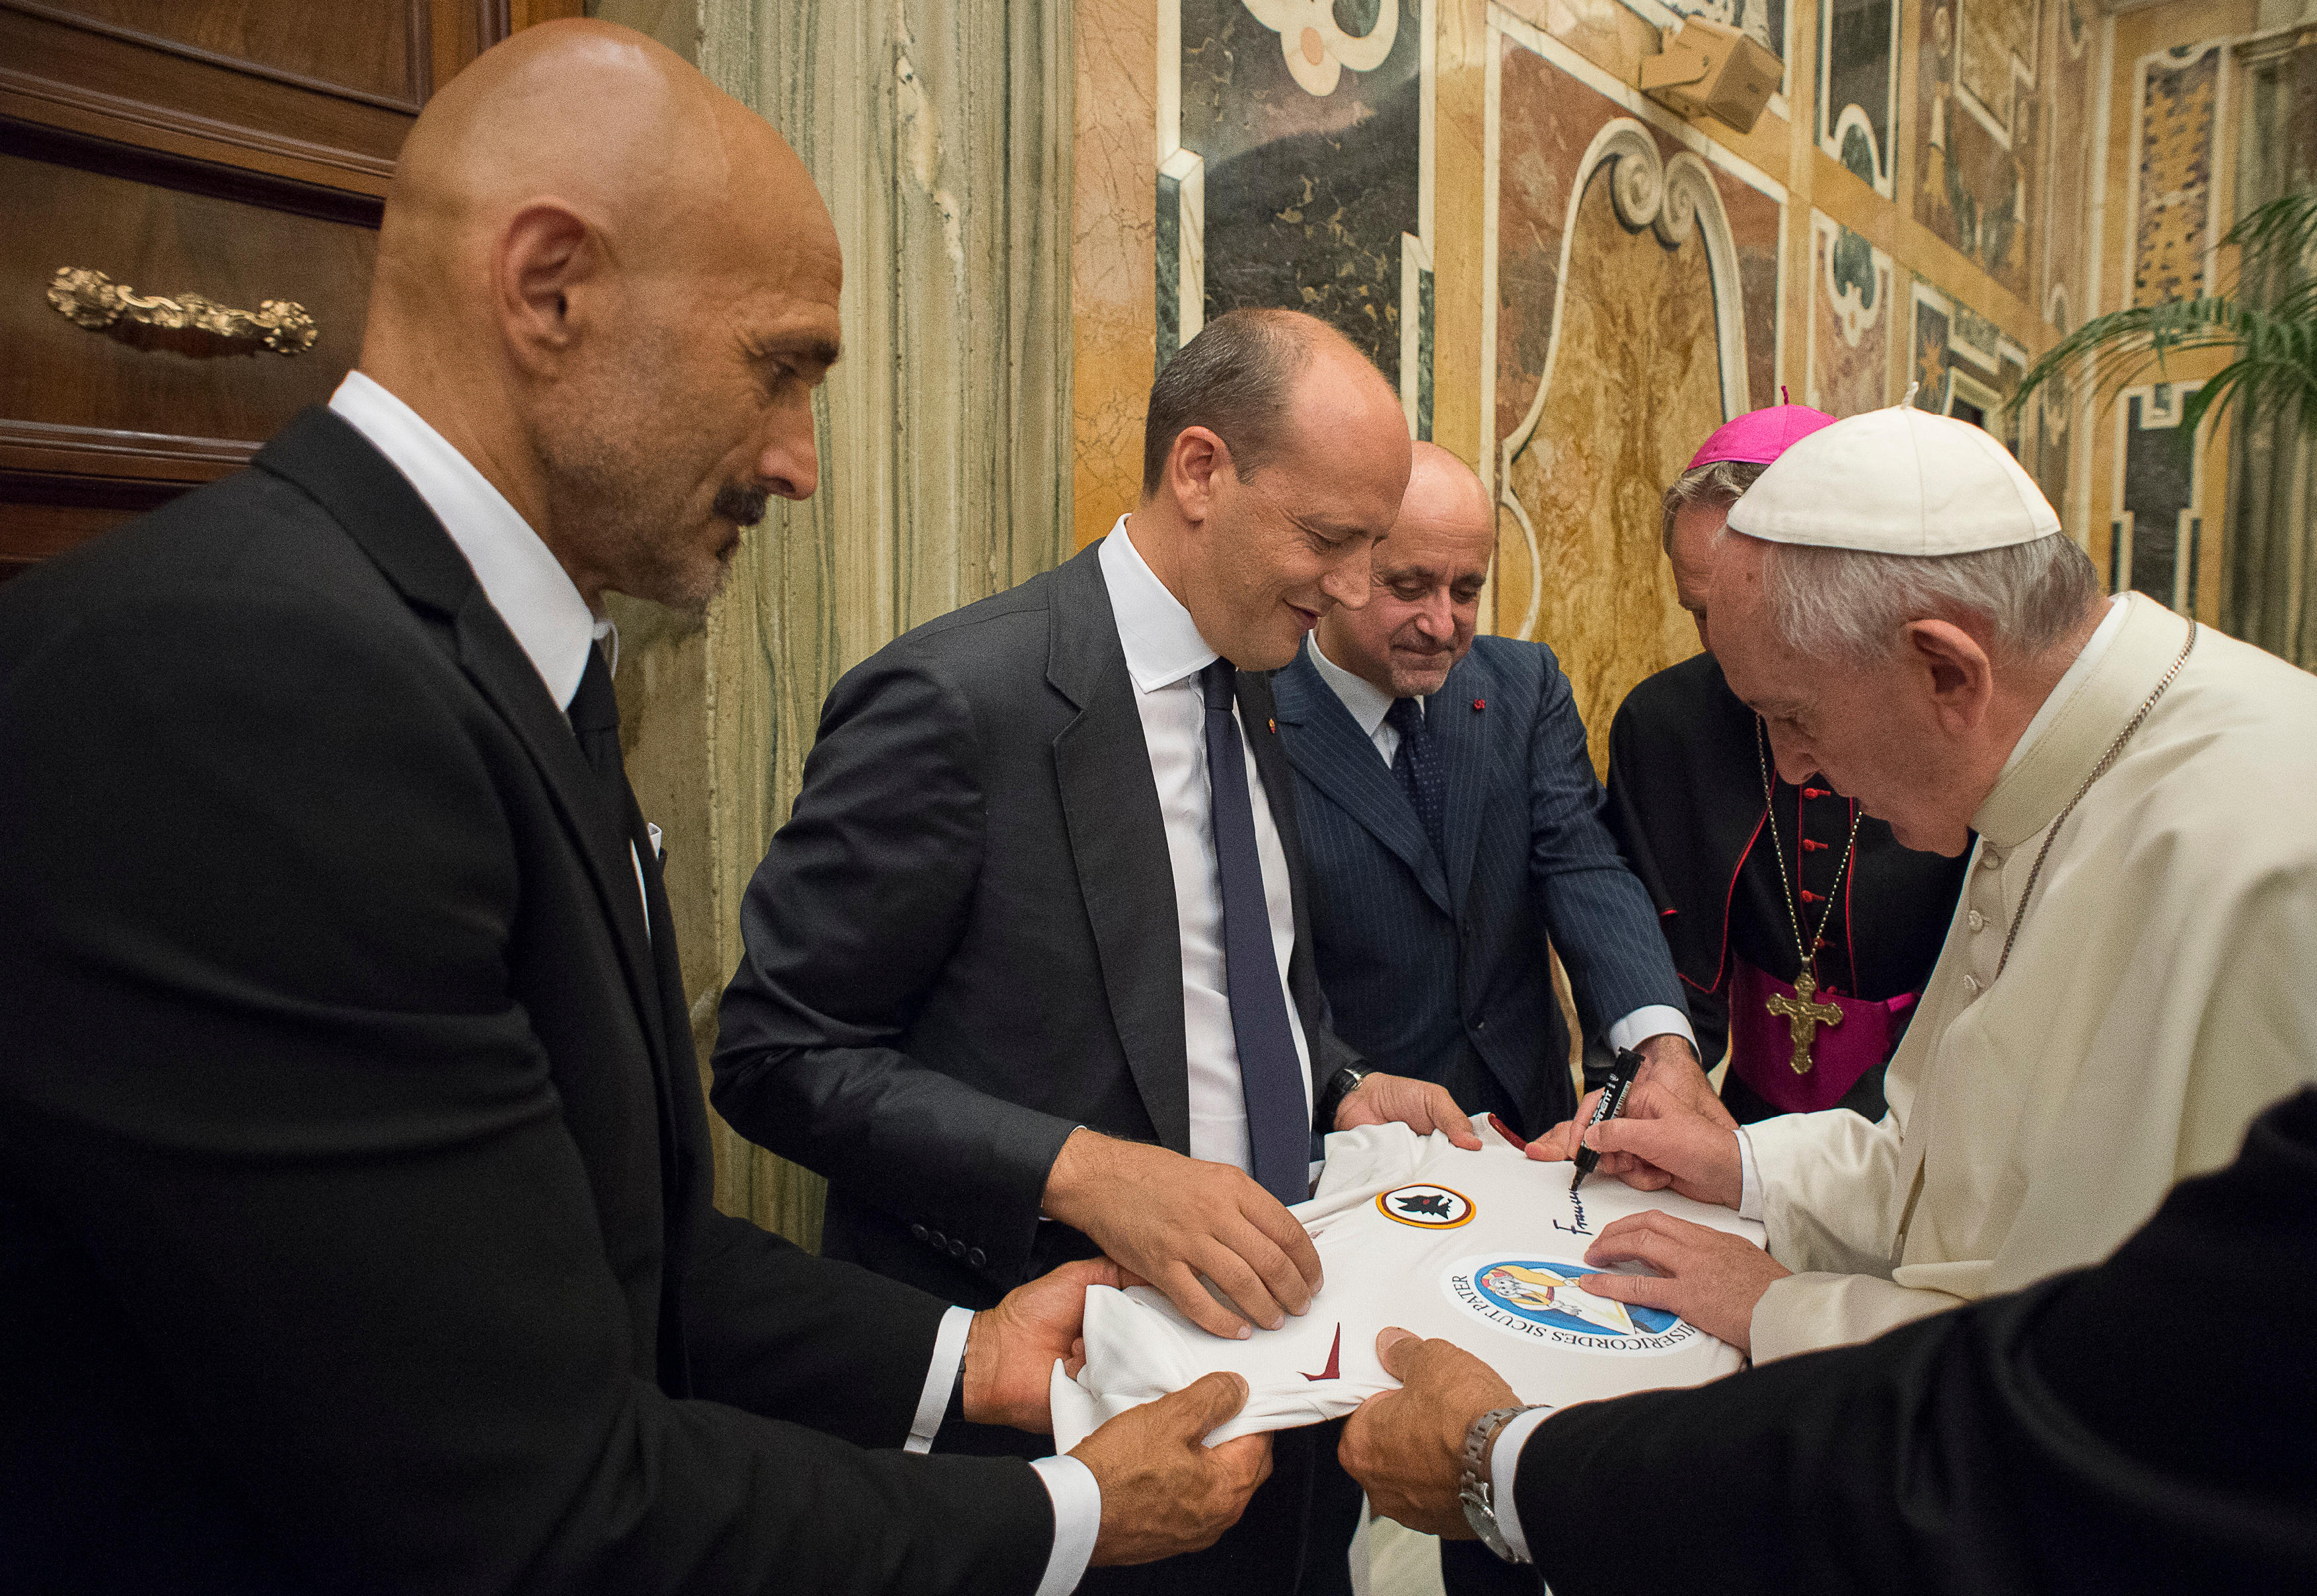 Le maillot signé par le pape François sera vendu aux enchères © L'Osservatore Romano